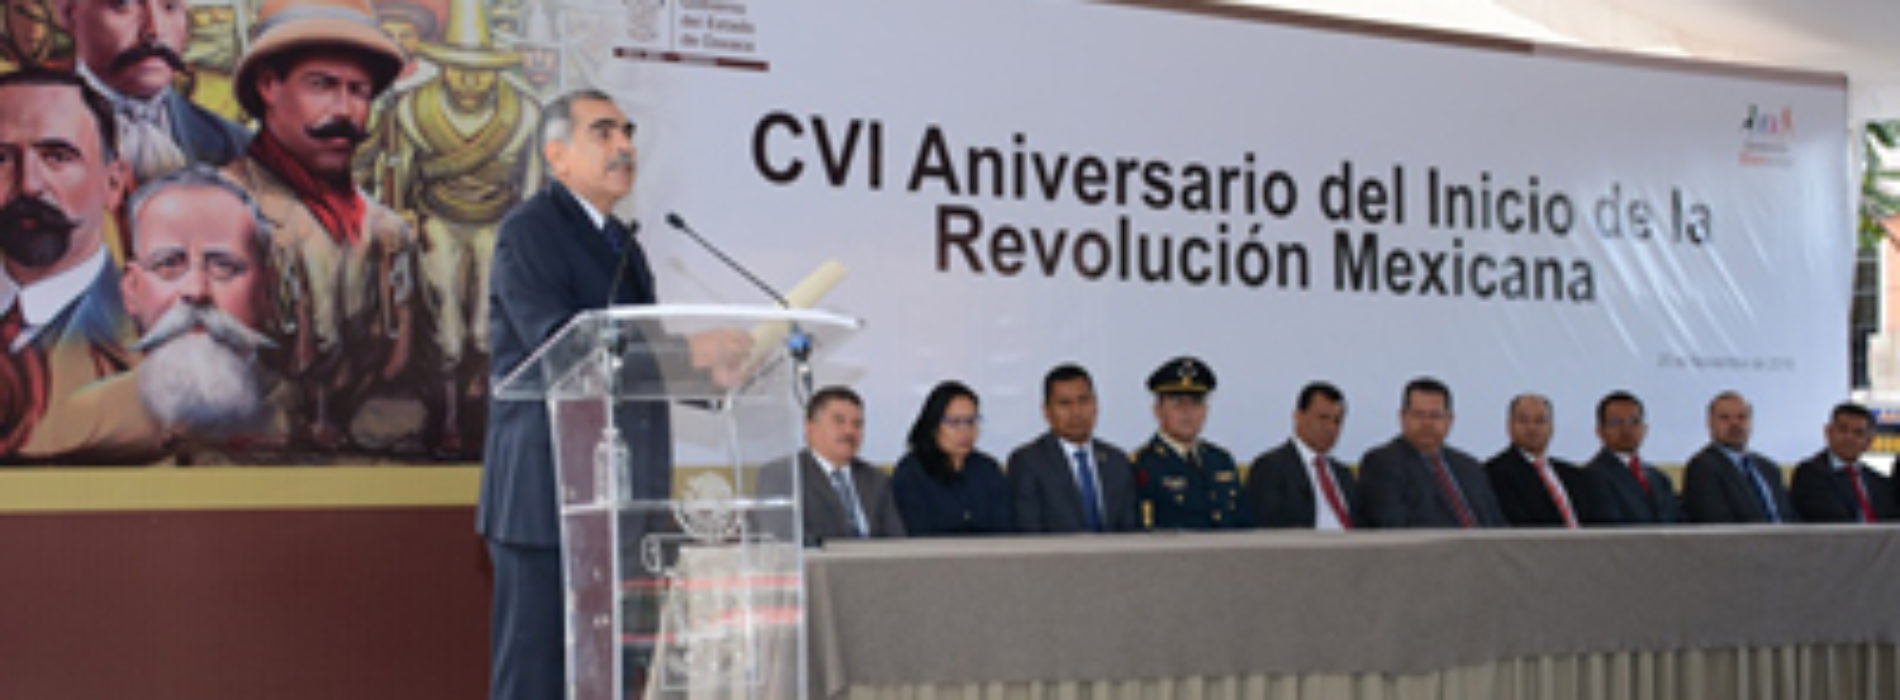 Conmemora Gobierno de Oaxaca CVI Aniversario del Inicio de la Revolución Mexicana